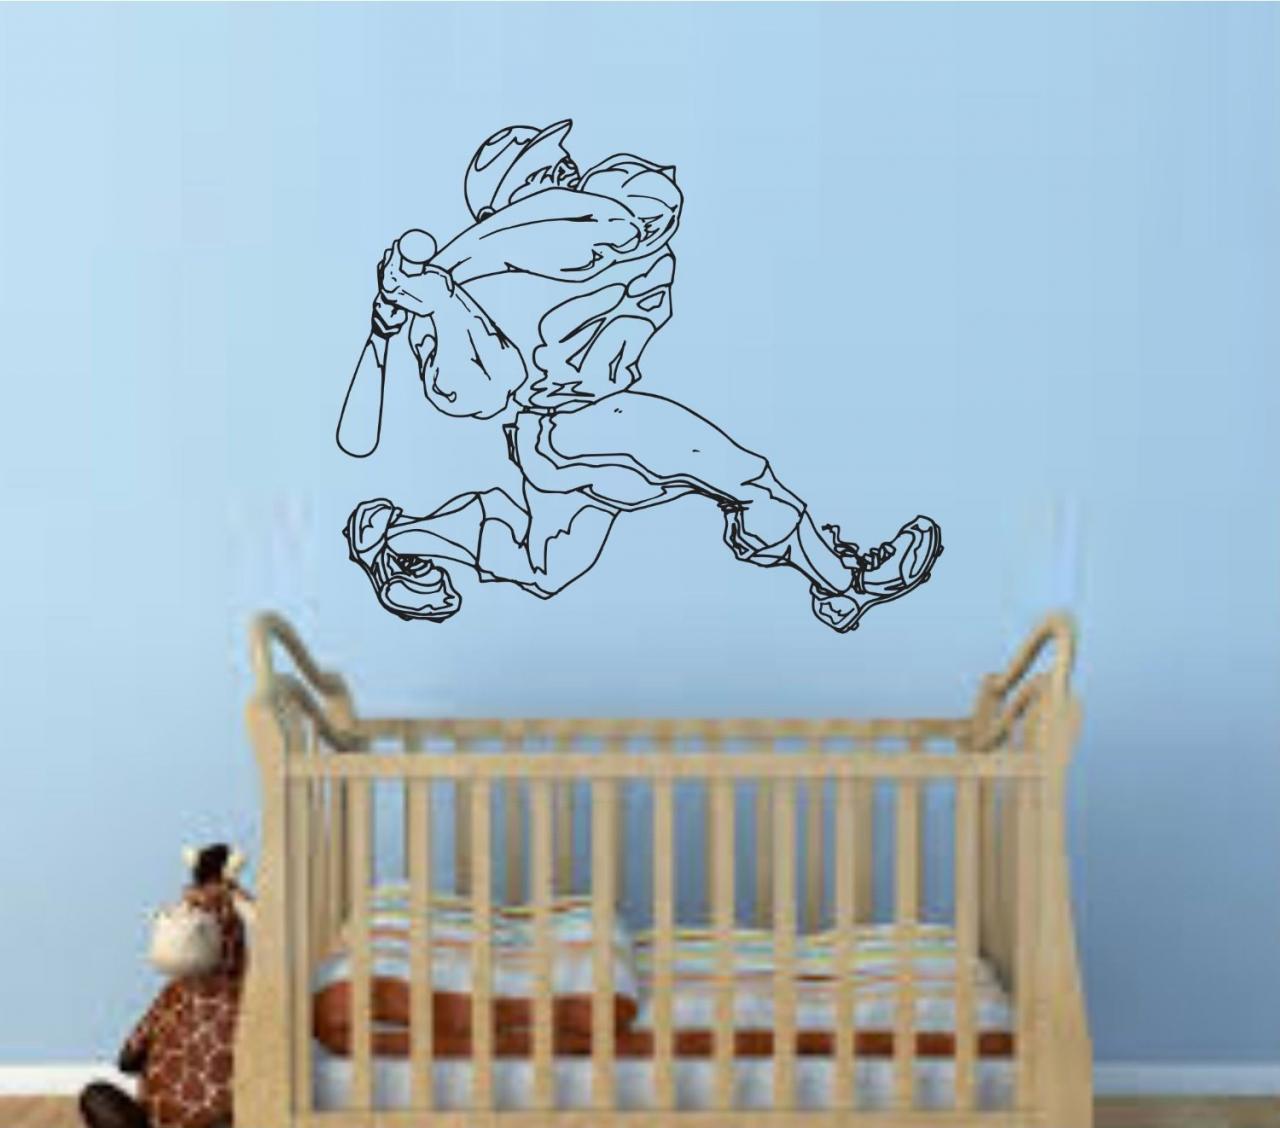 Baseball Player Version 108 Wall Vinyl Wall Decal Sticker Art Sports Kid Children Ball Nursery Boy Teen Homerun